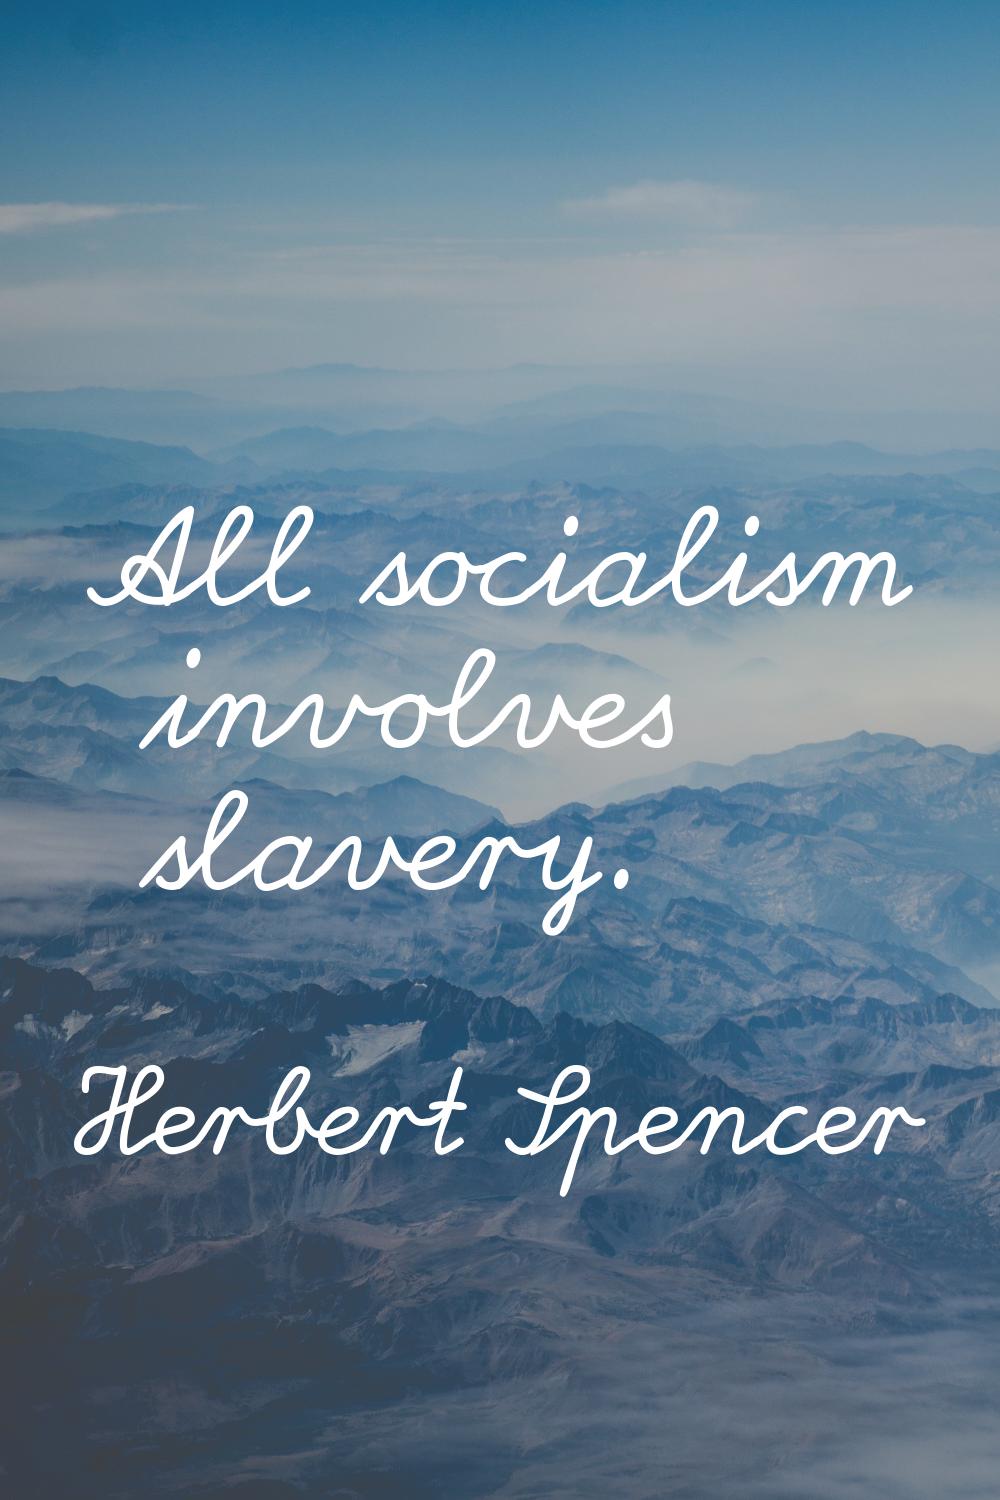 All socialism involves slavery.